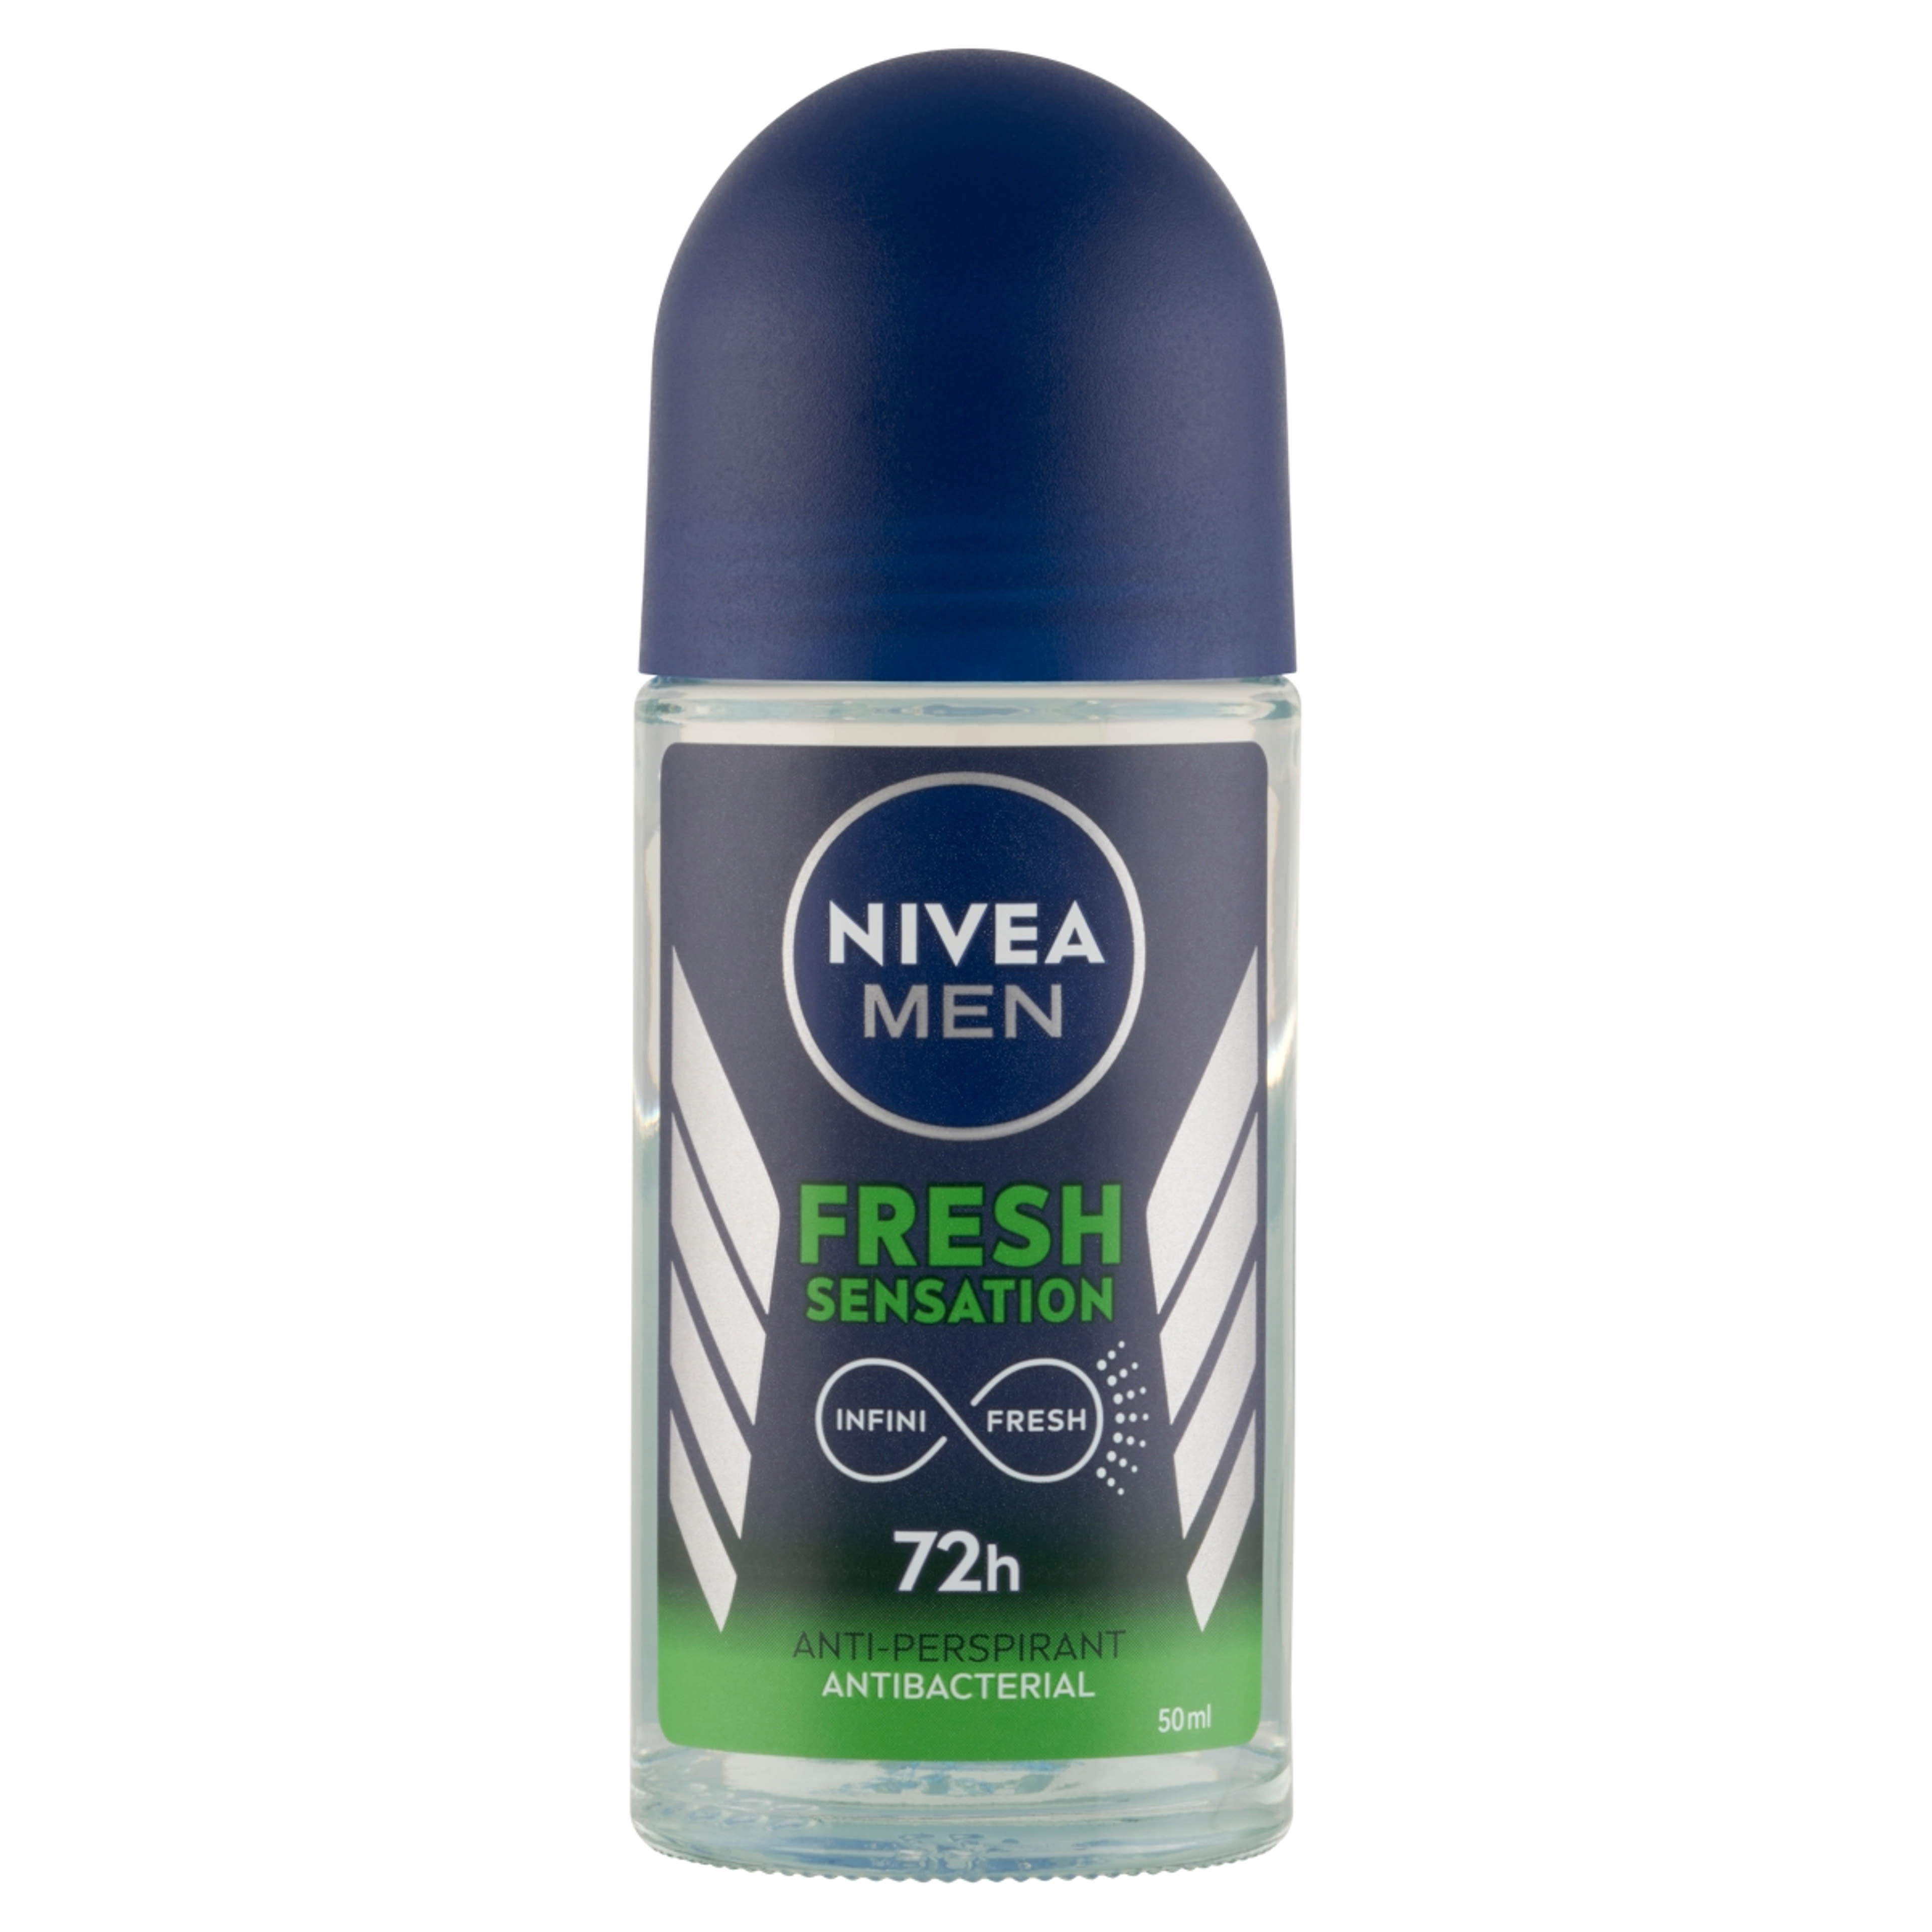 Nivea Men Fresh Sensation golyós dezodor - 50 ml-1